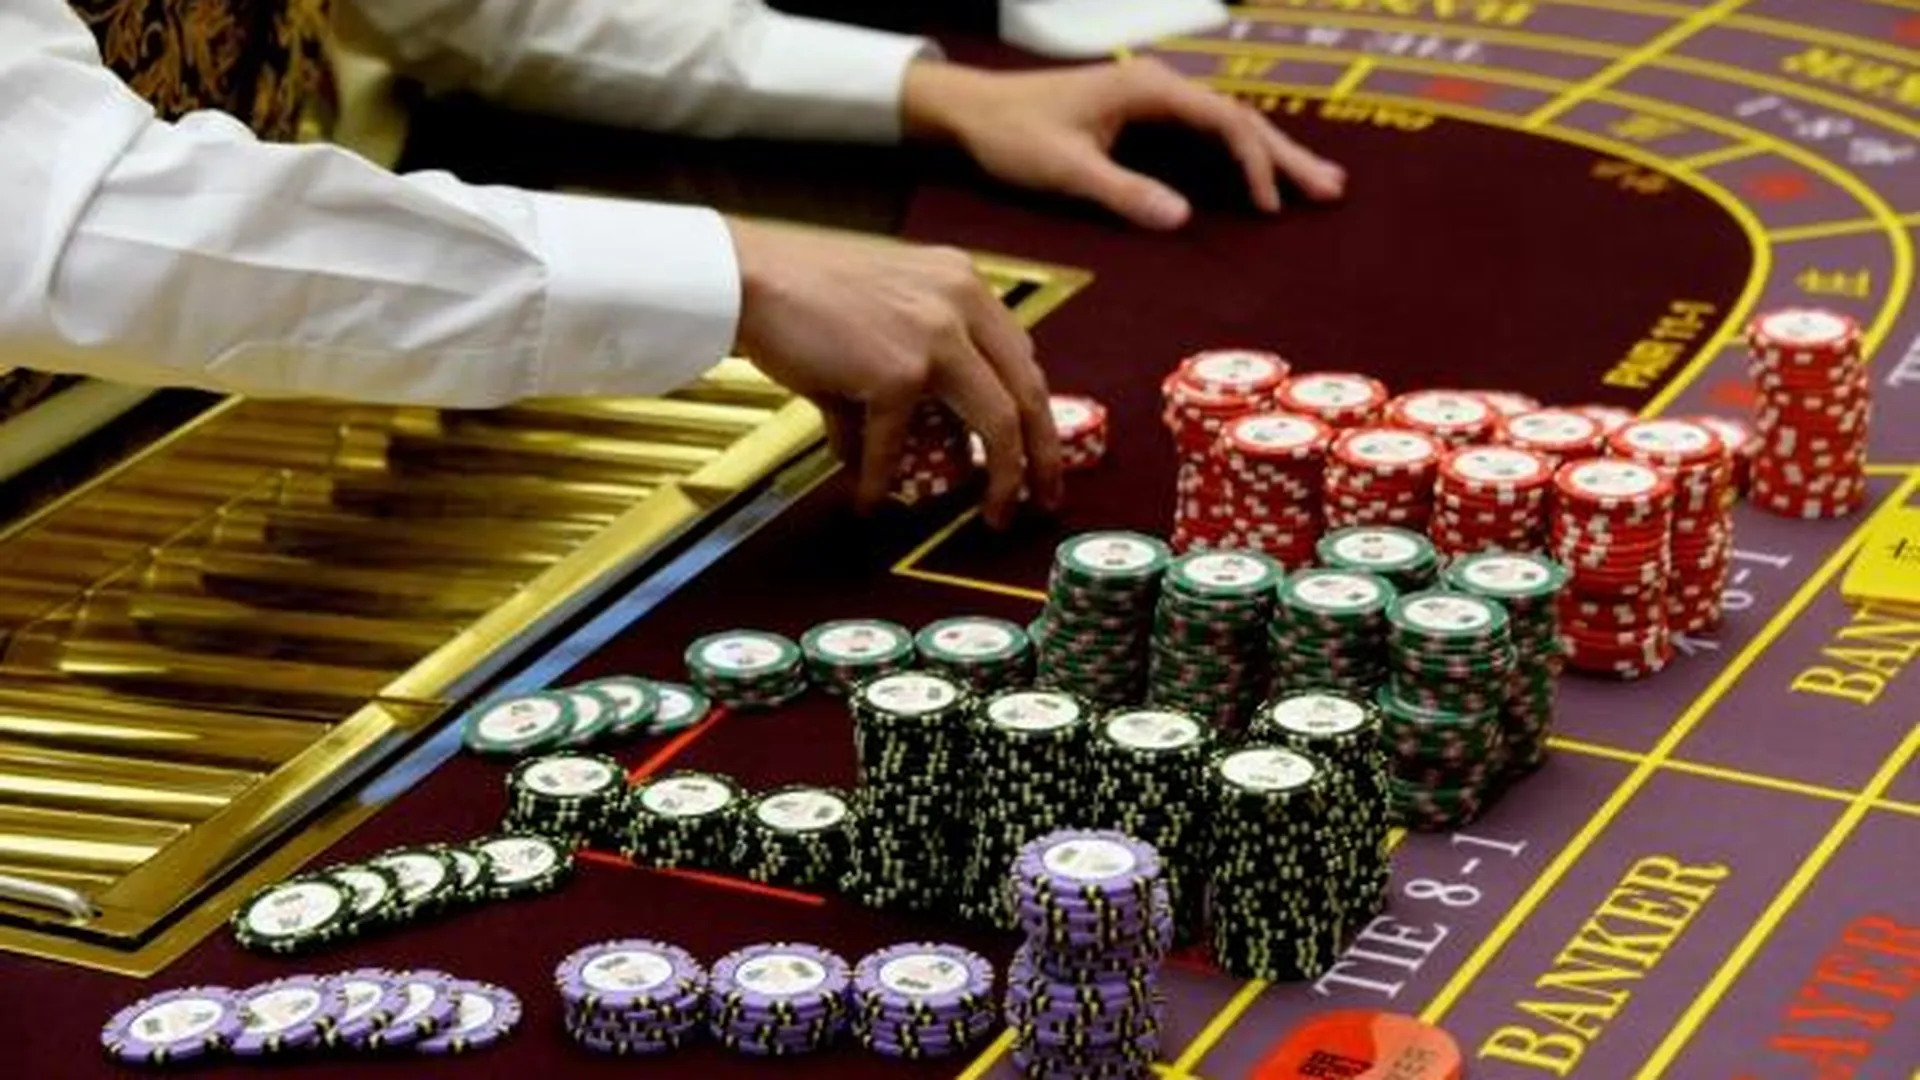 Налоги на выигрыш в лотерею и казино начнут собирать организаторы - законопроект